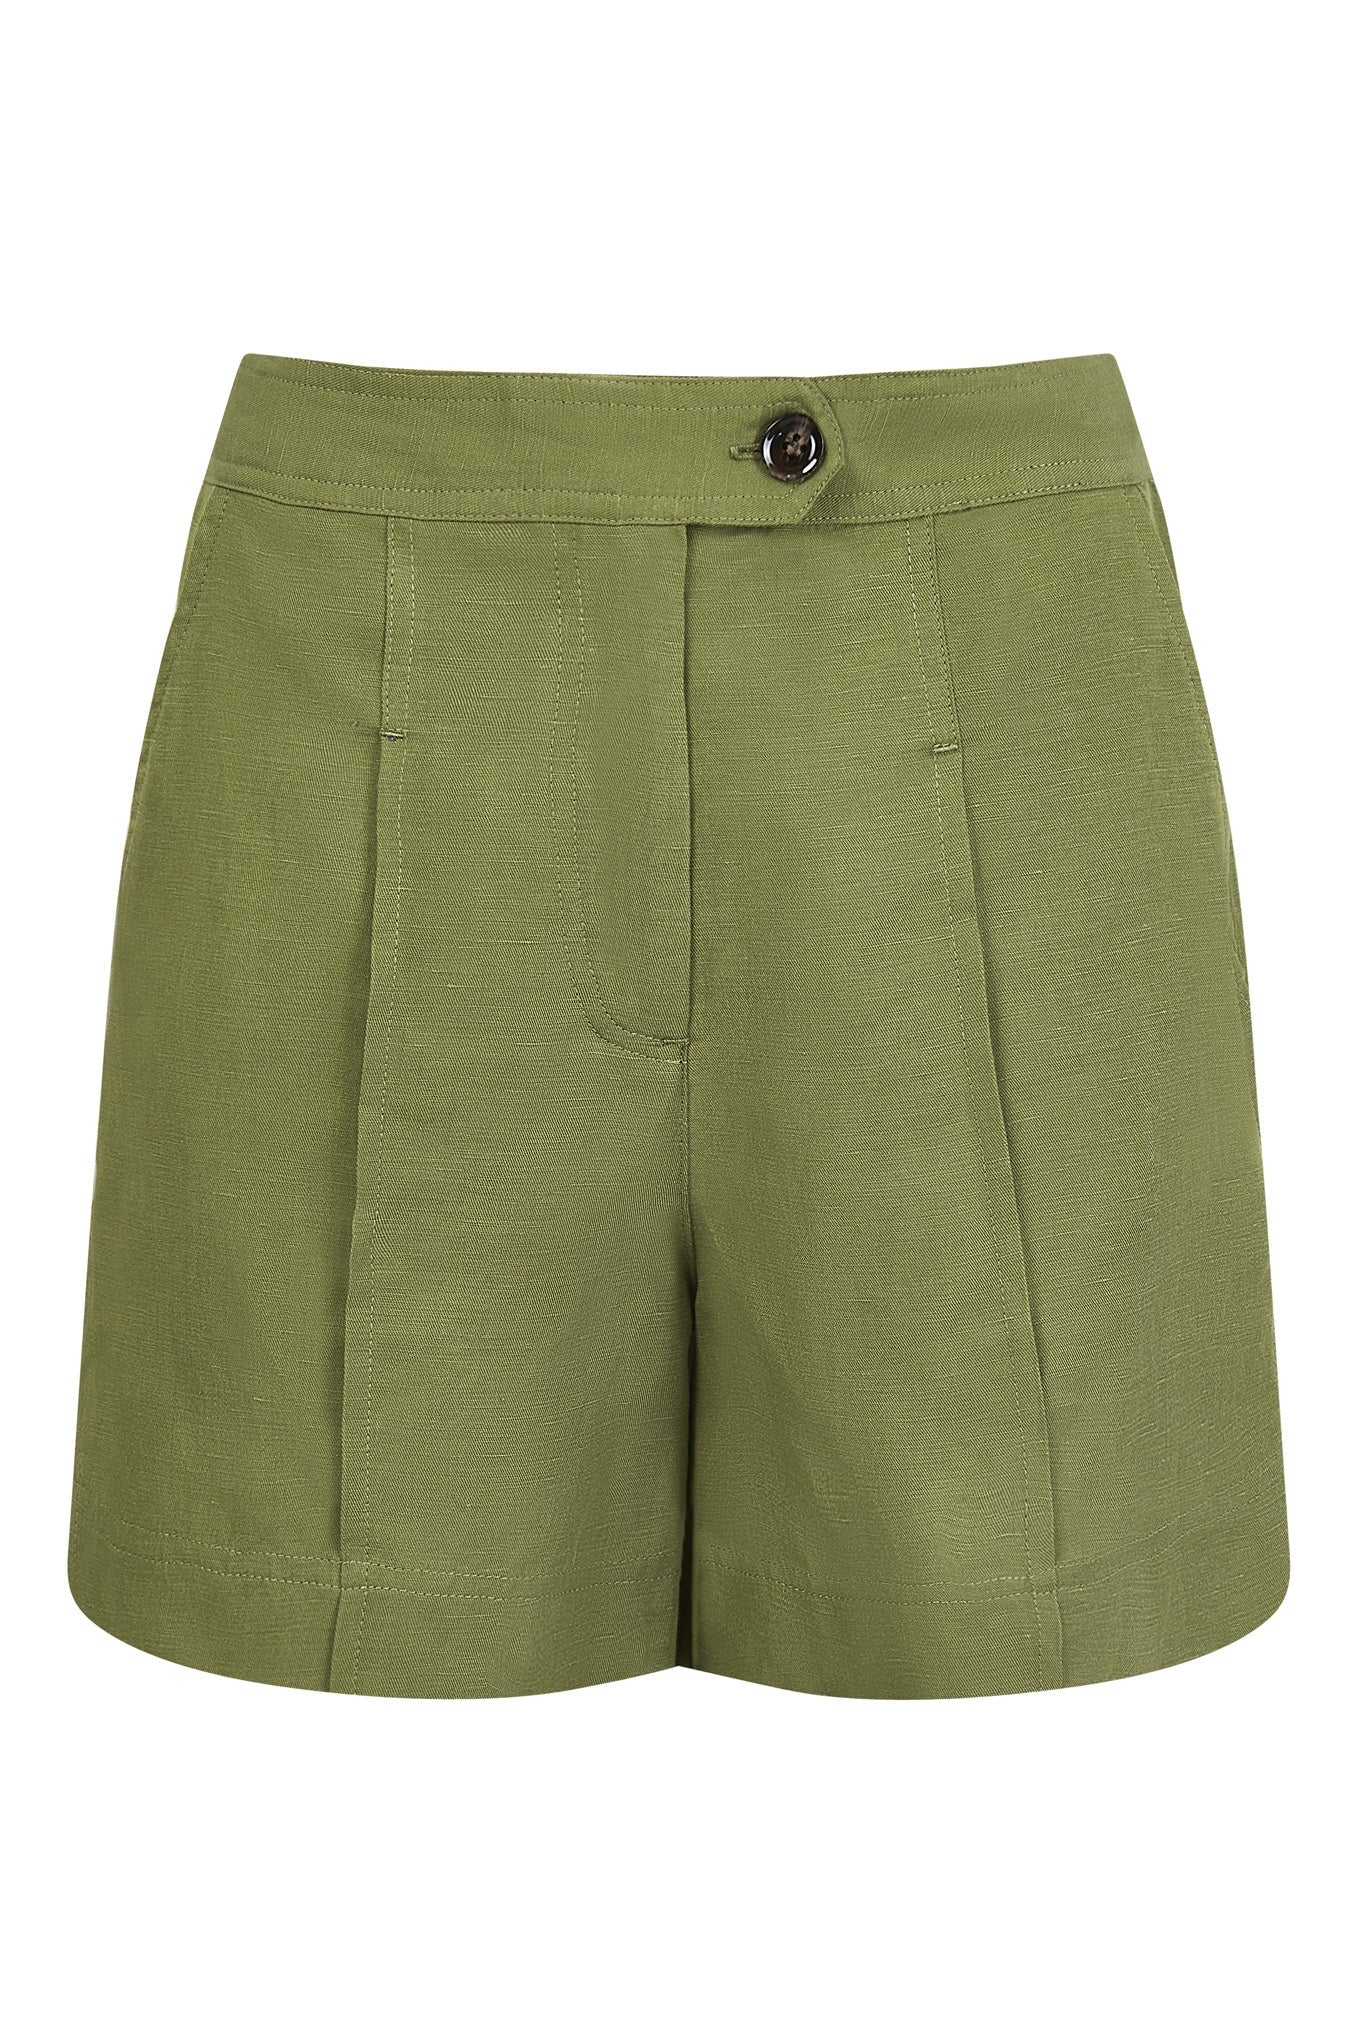 Khaki green shorts EMMIE by Komodo